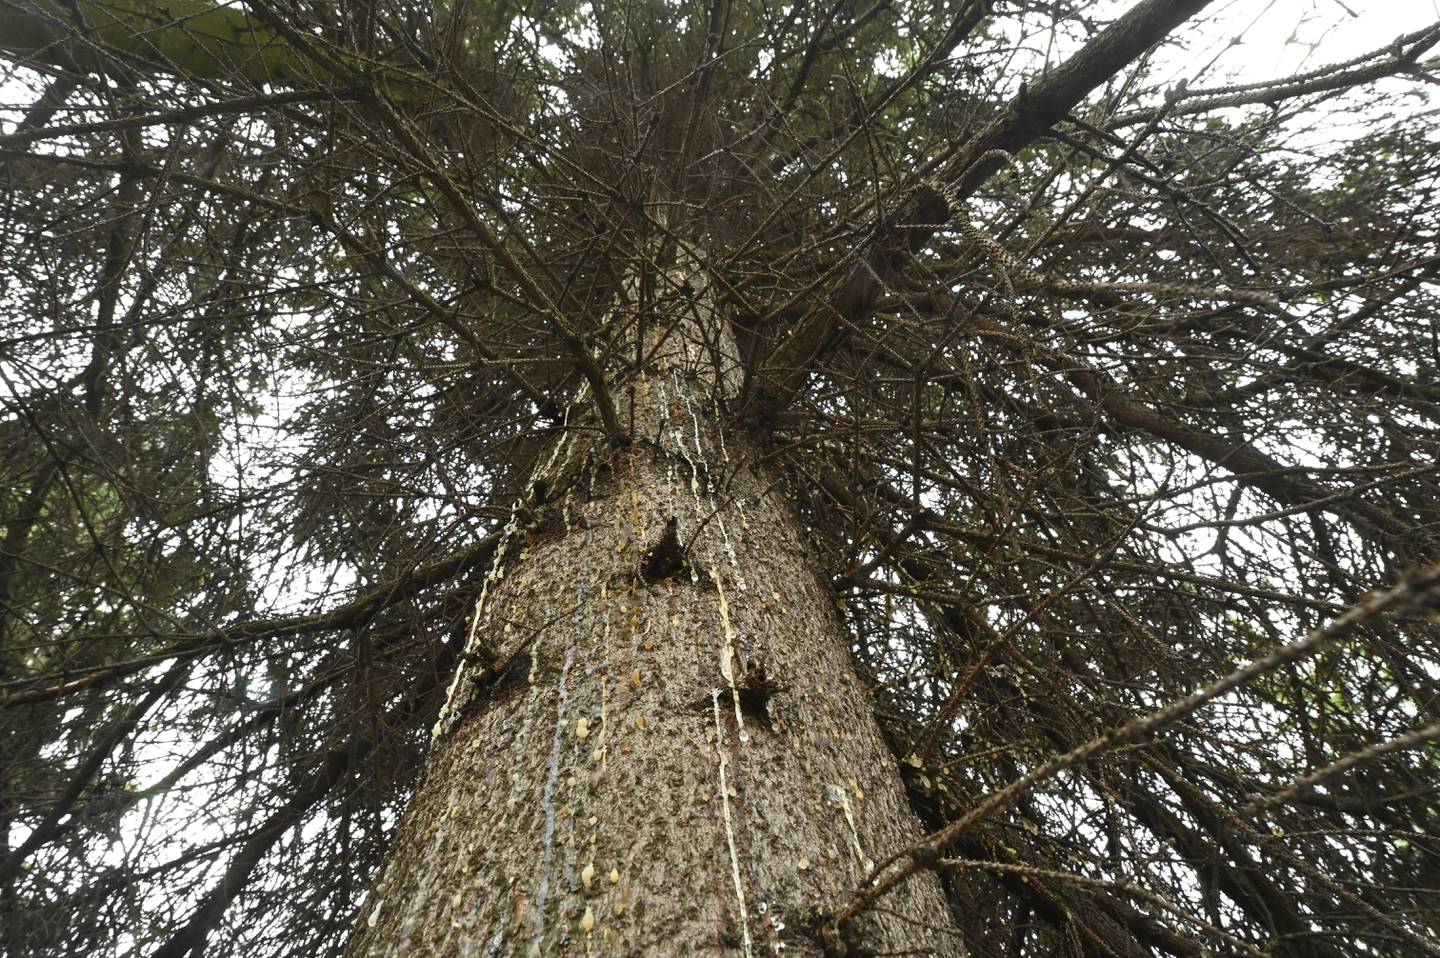 Spruce Bark Beetle killed trees